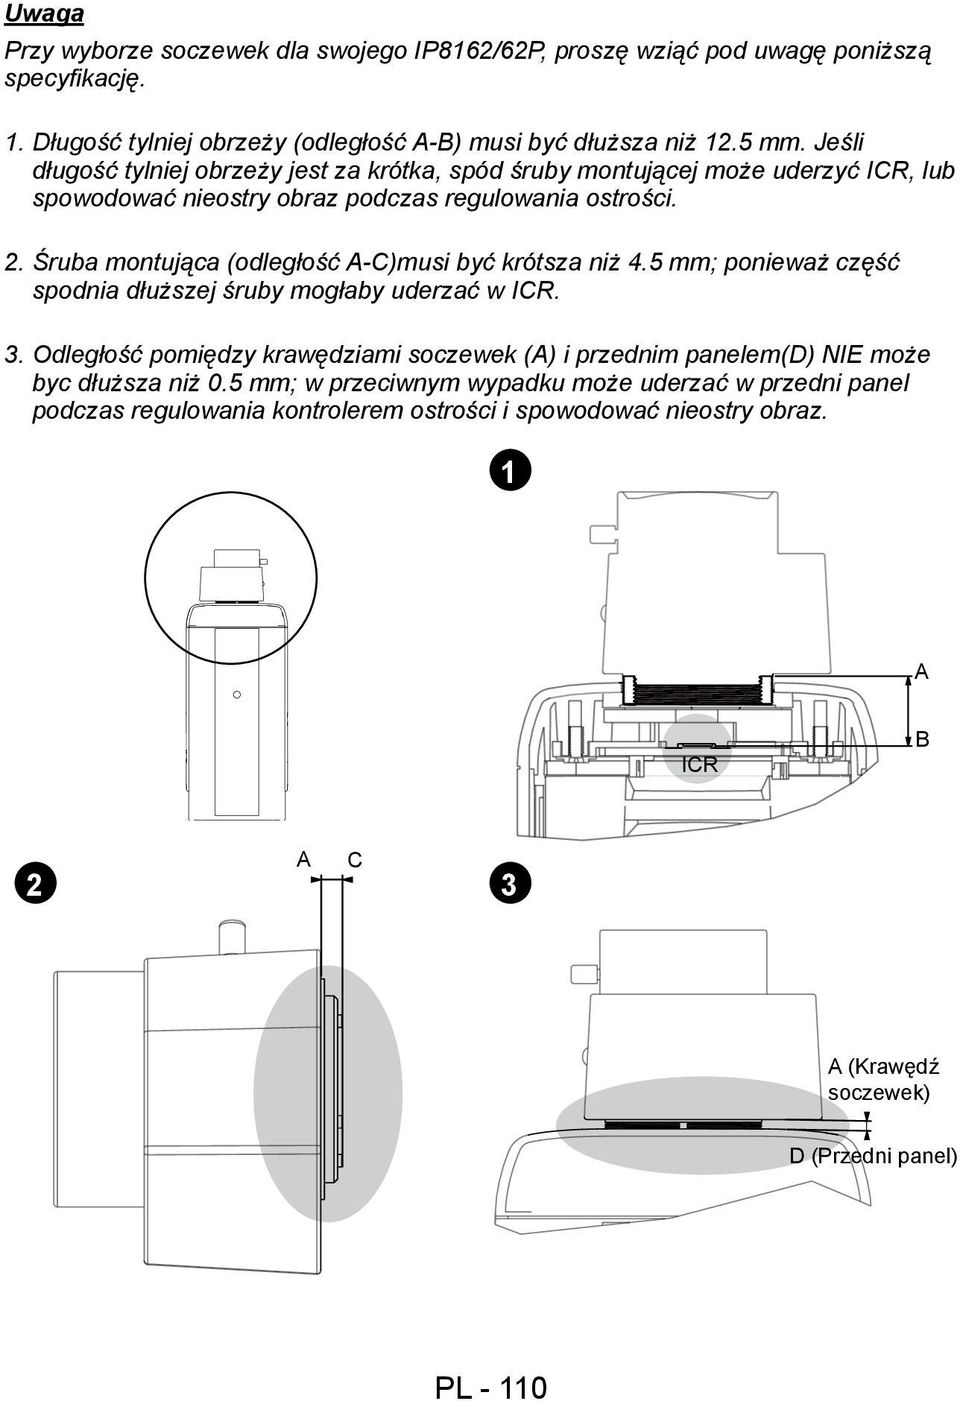 Śruba montująca (odległość A-C)musi być krótsza niż 4.5 mm; ponieważ część spodnia dłuższej śruby mogłaby uderzać w ICR. 3.